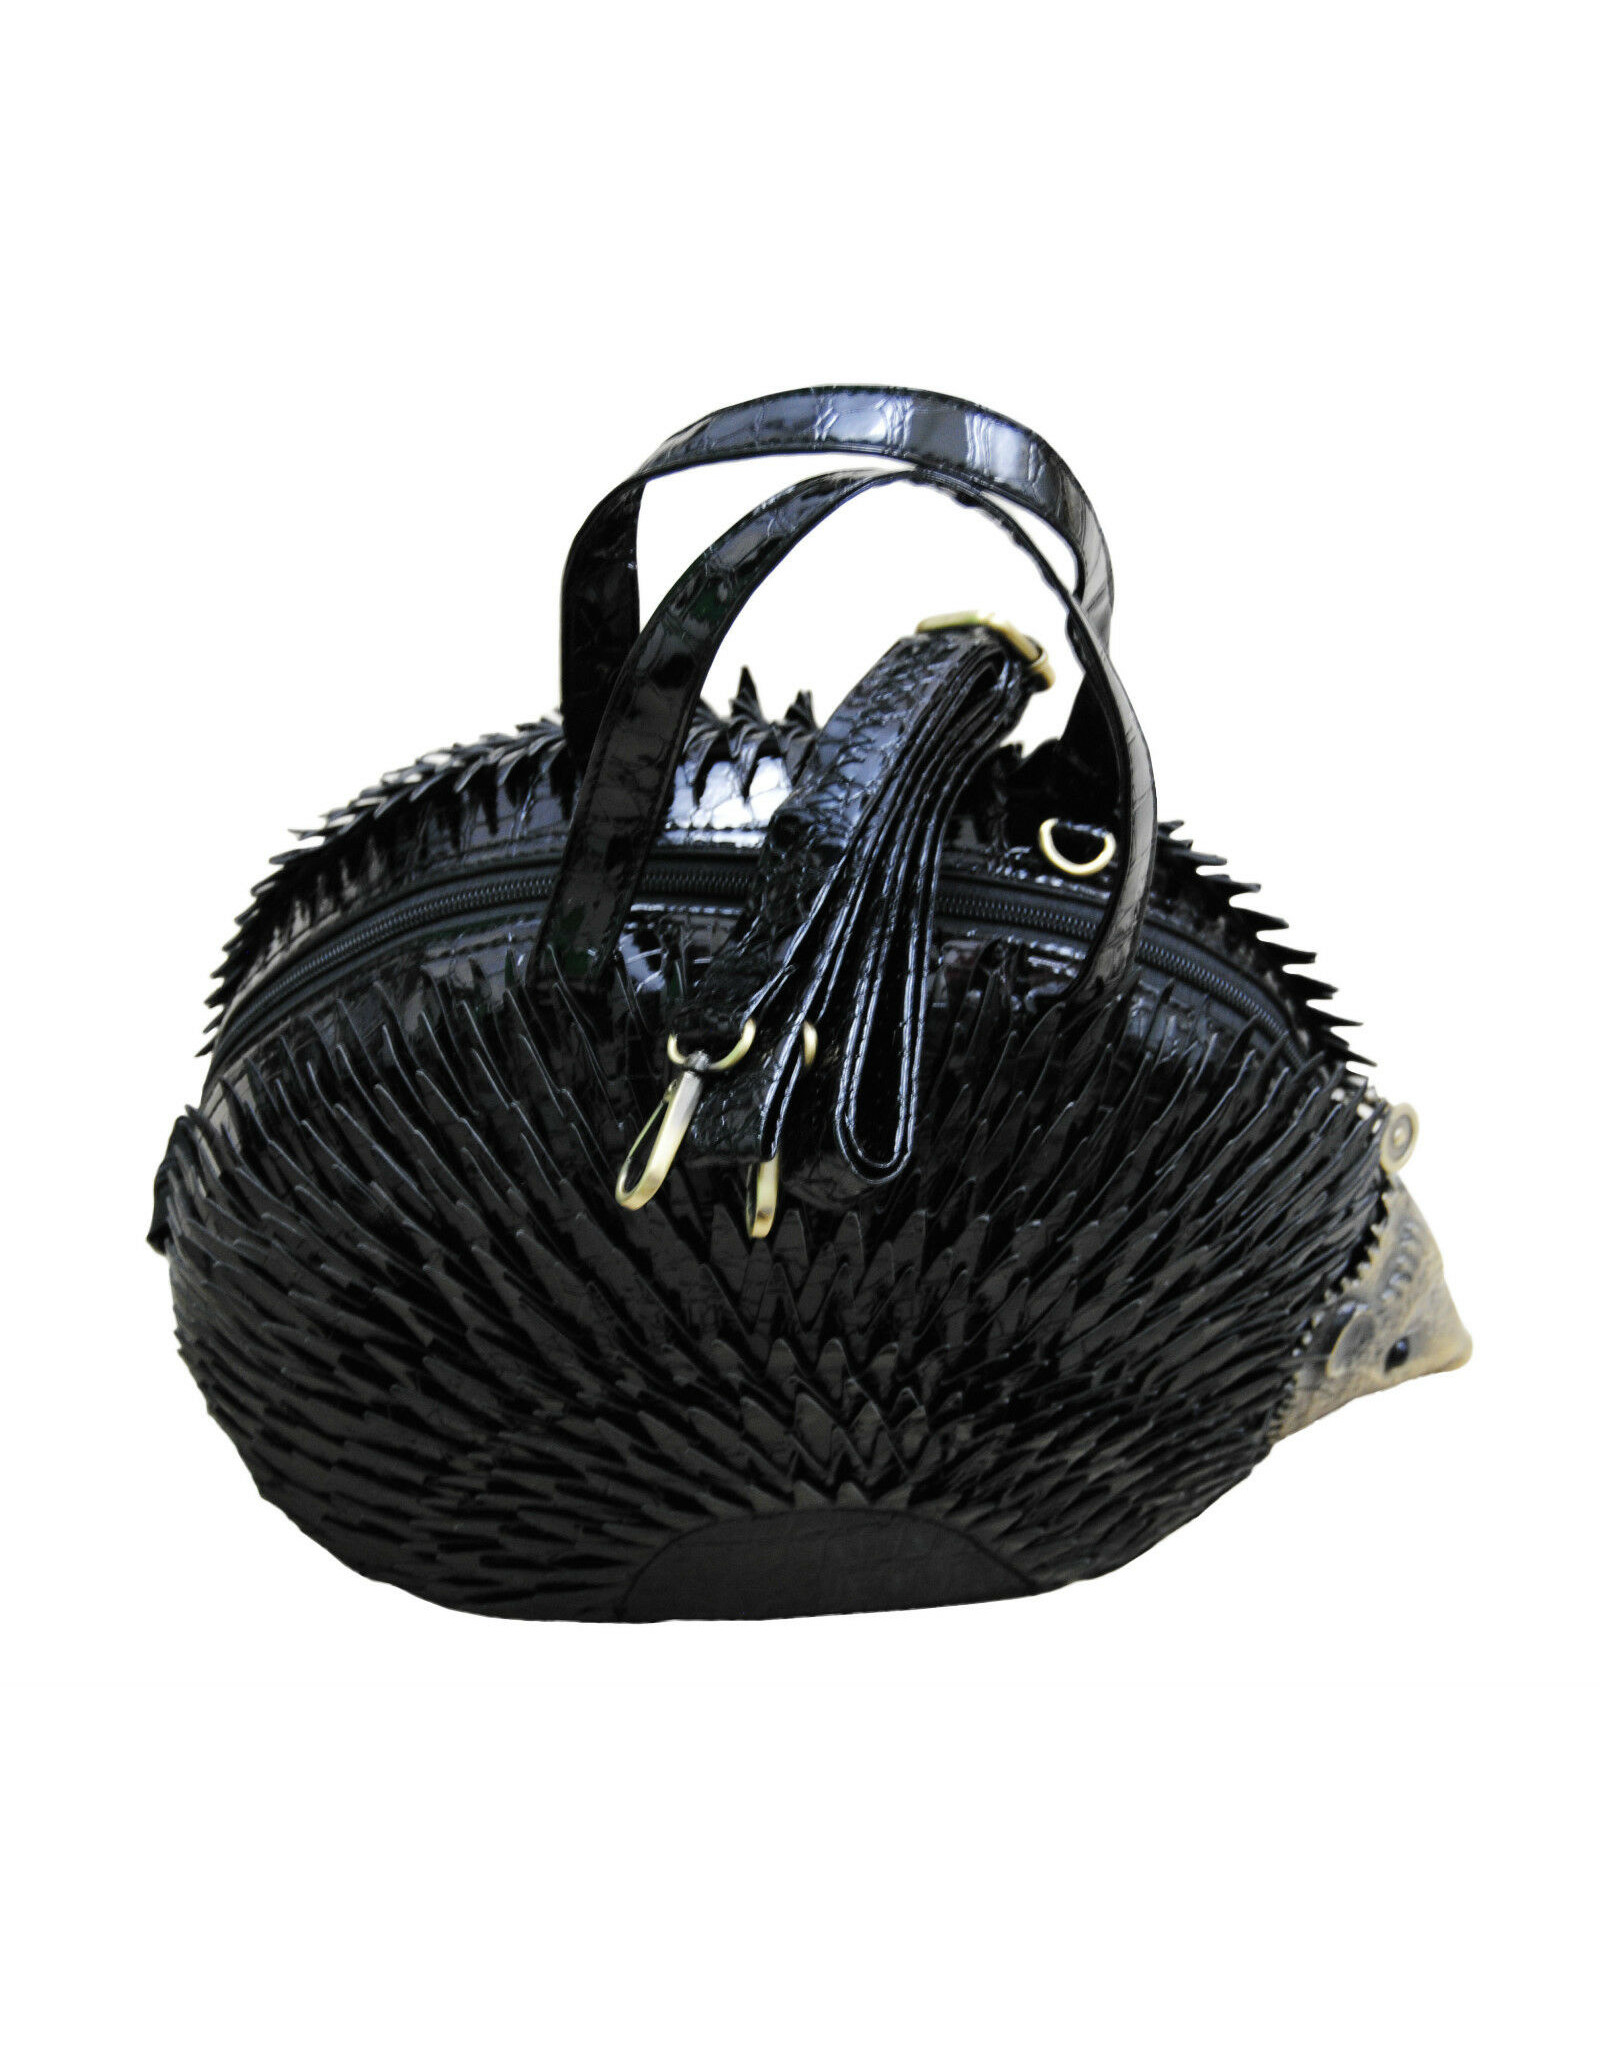 Magic Bags Fantasy tassen en portemonnees - Egel handtas (zwart)